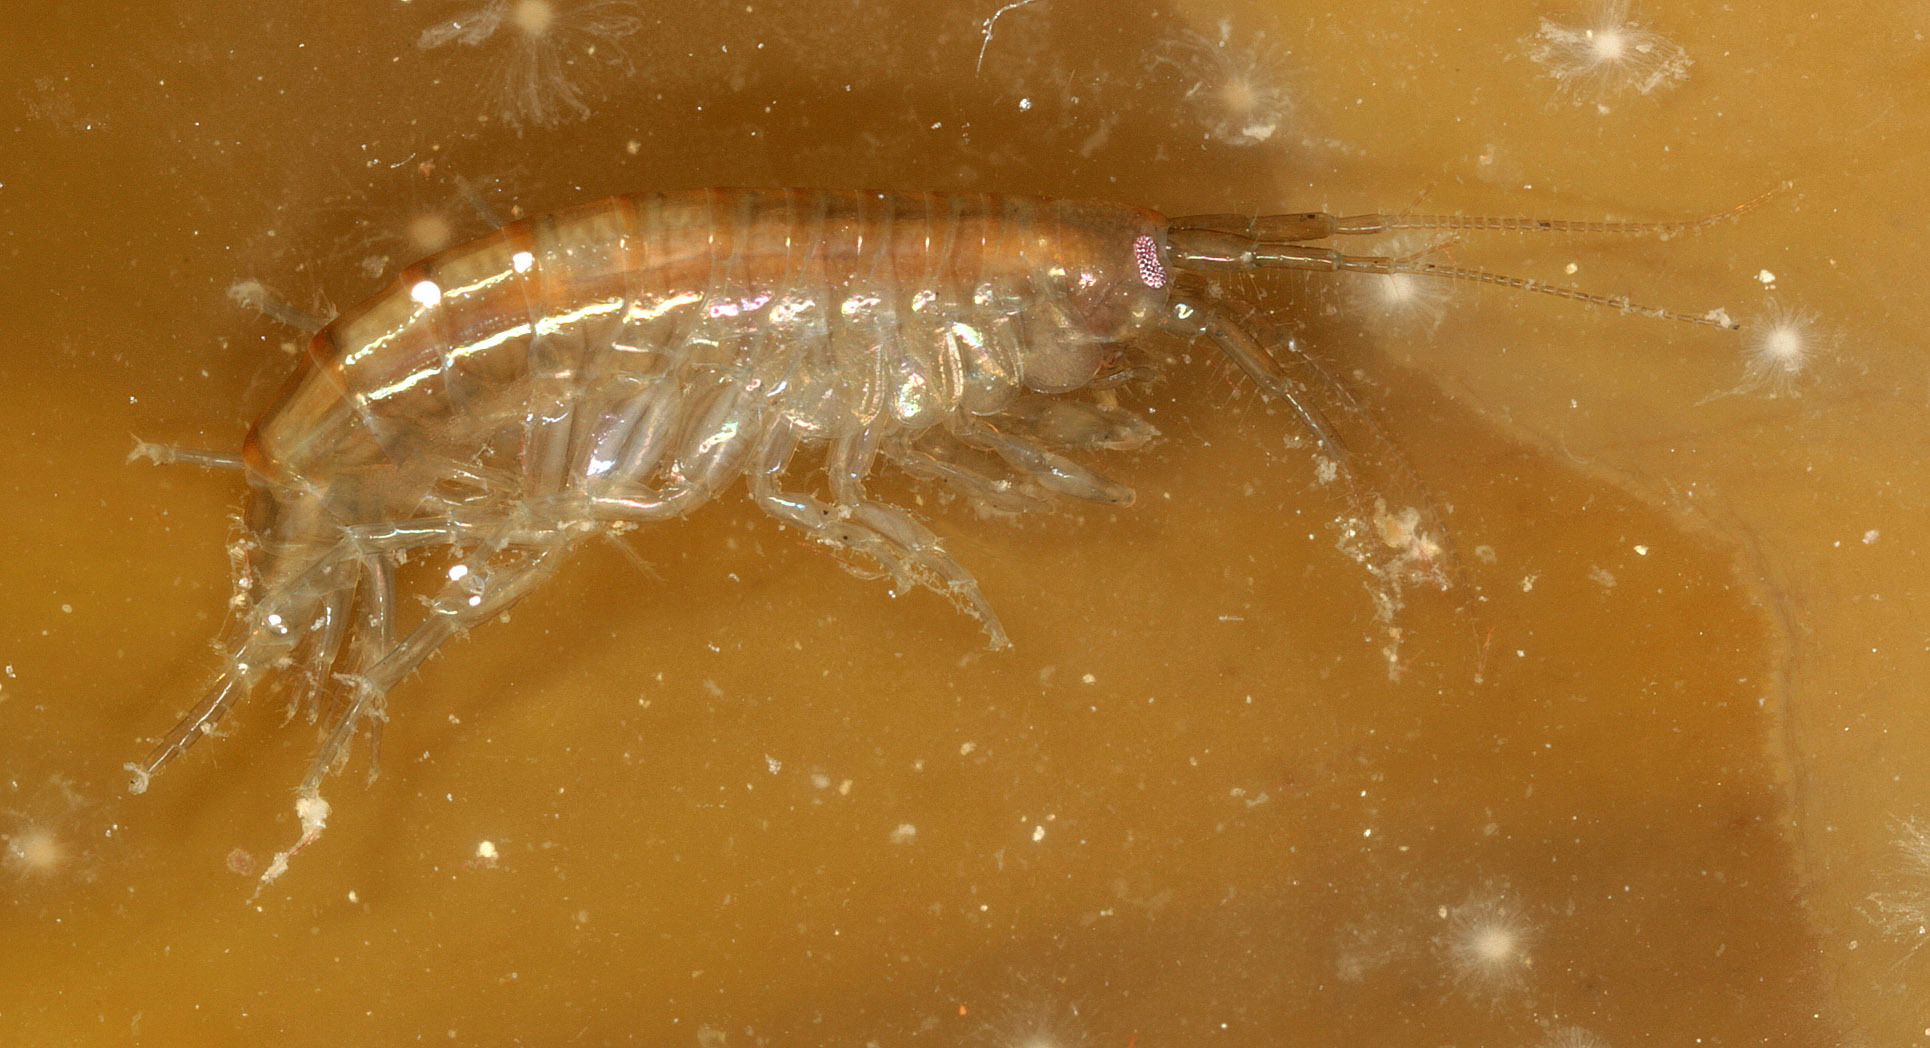 Image of <i>Echinogammarus obtusatus</i>